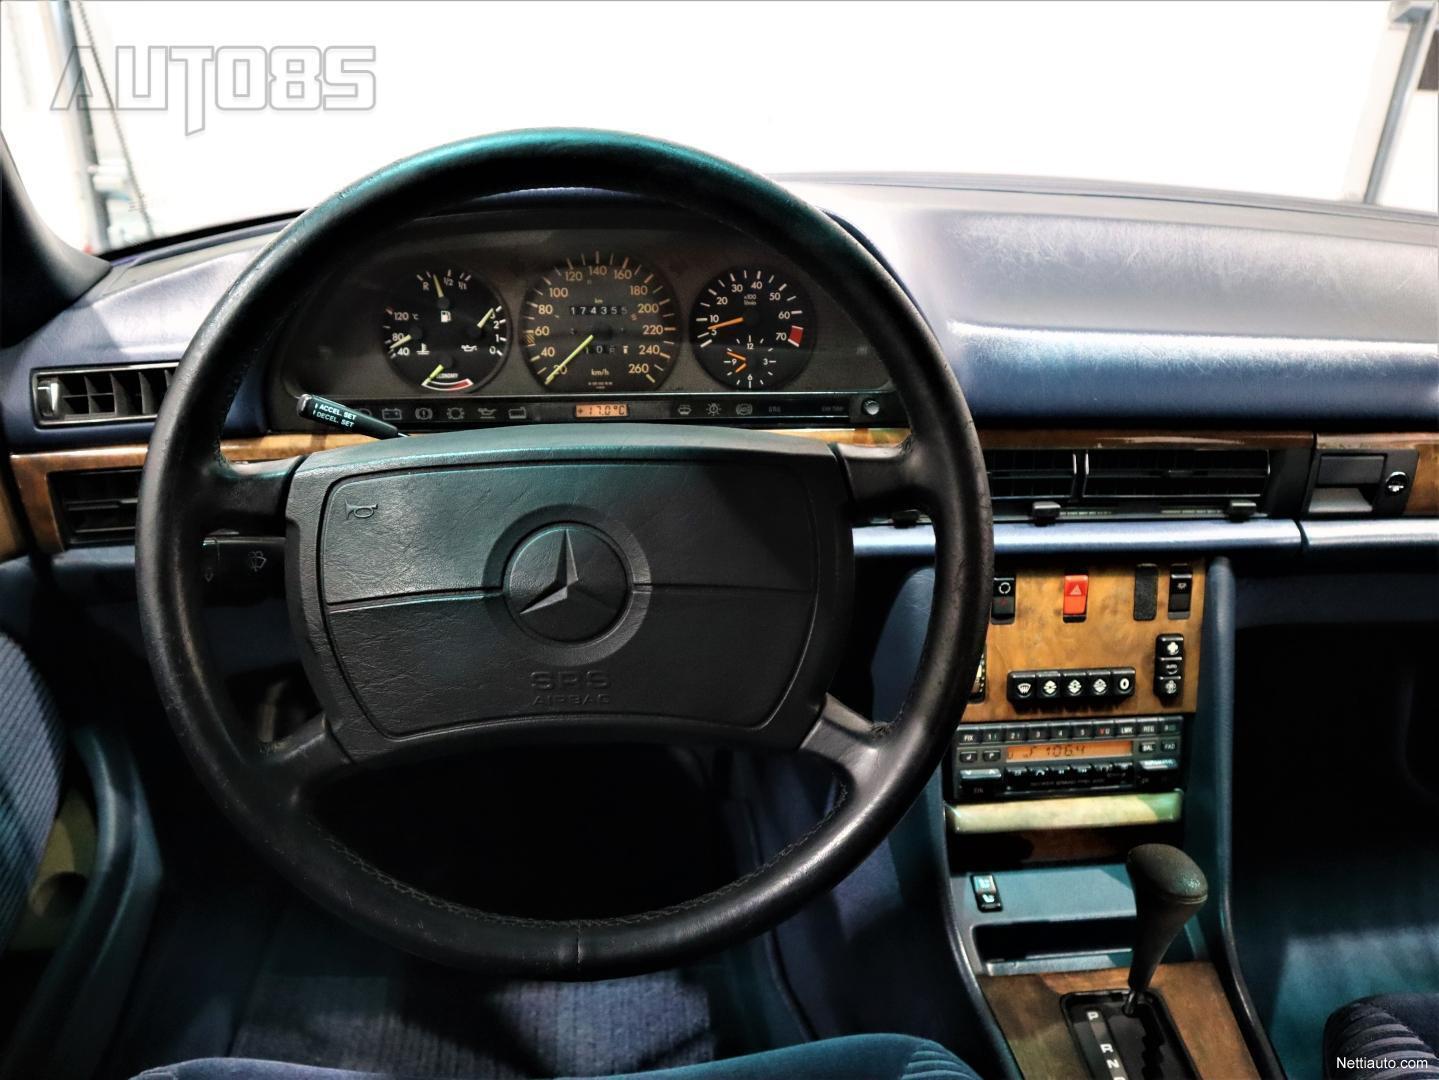 Mercedes-Benz SEL 560 W126 5.6 V8 * RAHOITUS 0e KÄSIRAHALLA * SÄHKÖPENKIT *  LÄMMITT. PENKIT x4 * PITKÄ MALLI * MUSEOREKISTERÖITY HELMI Porrasperä 1989  - Vaihtoauto - Nettiauto